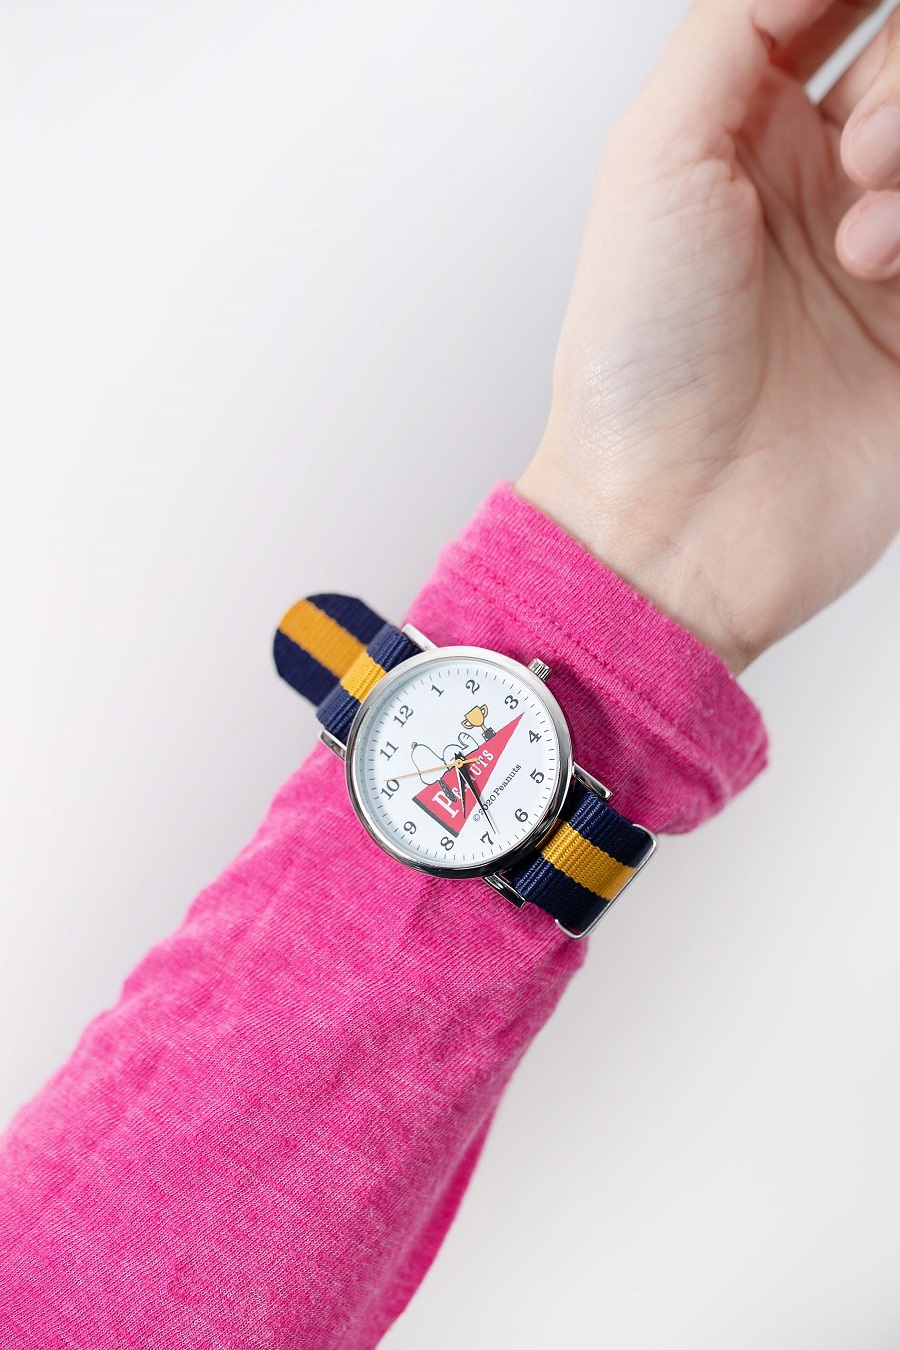 写真は、腕時計をピンクの服を合わせた様子(提供:KADOKAWA)